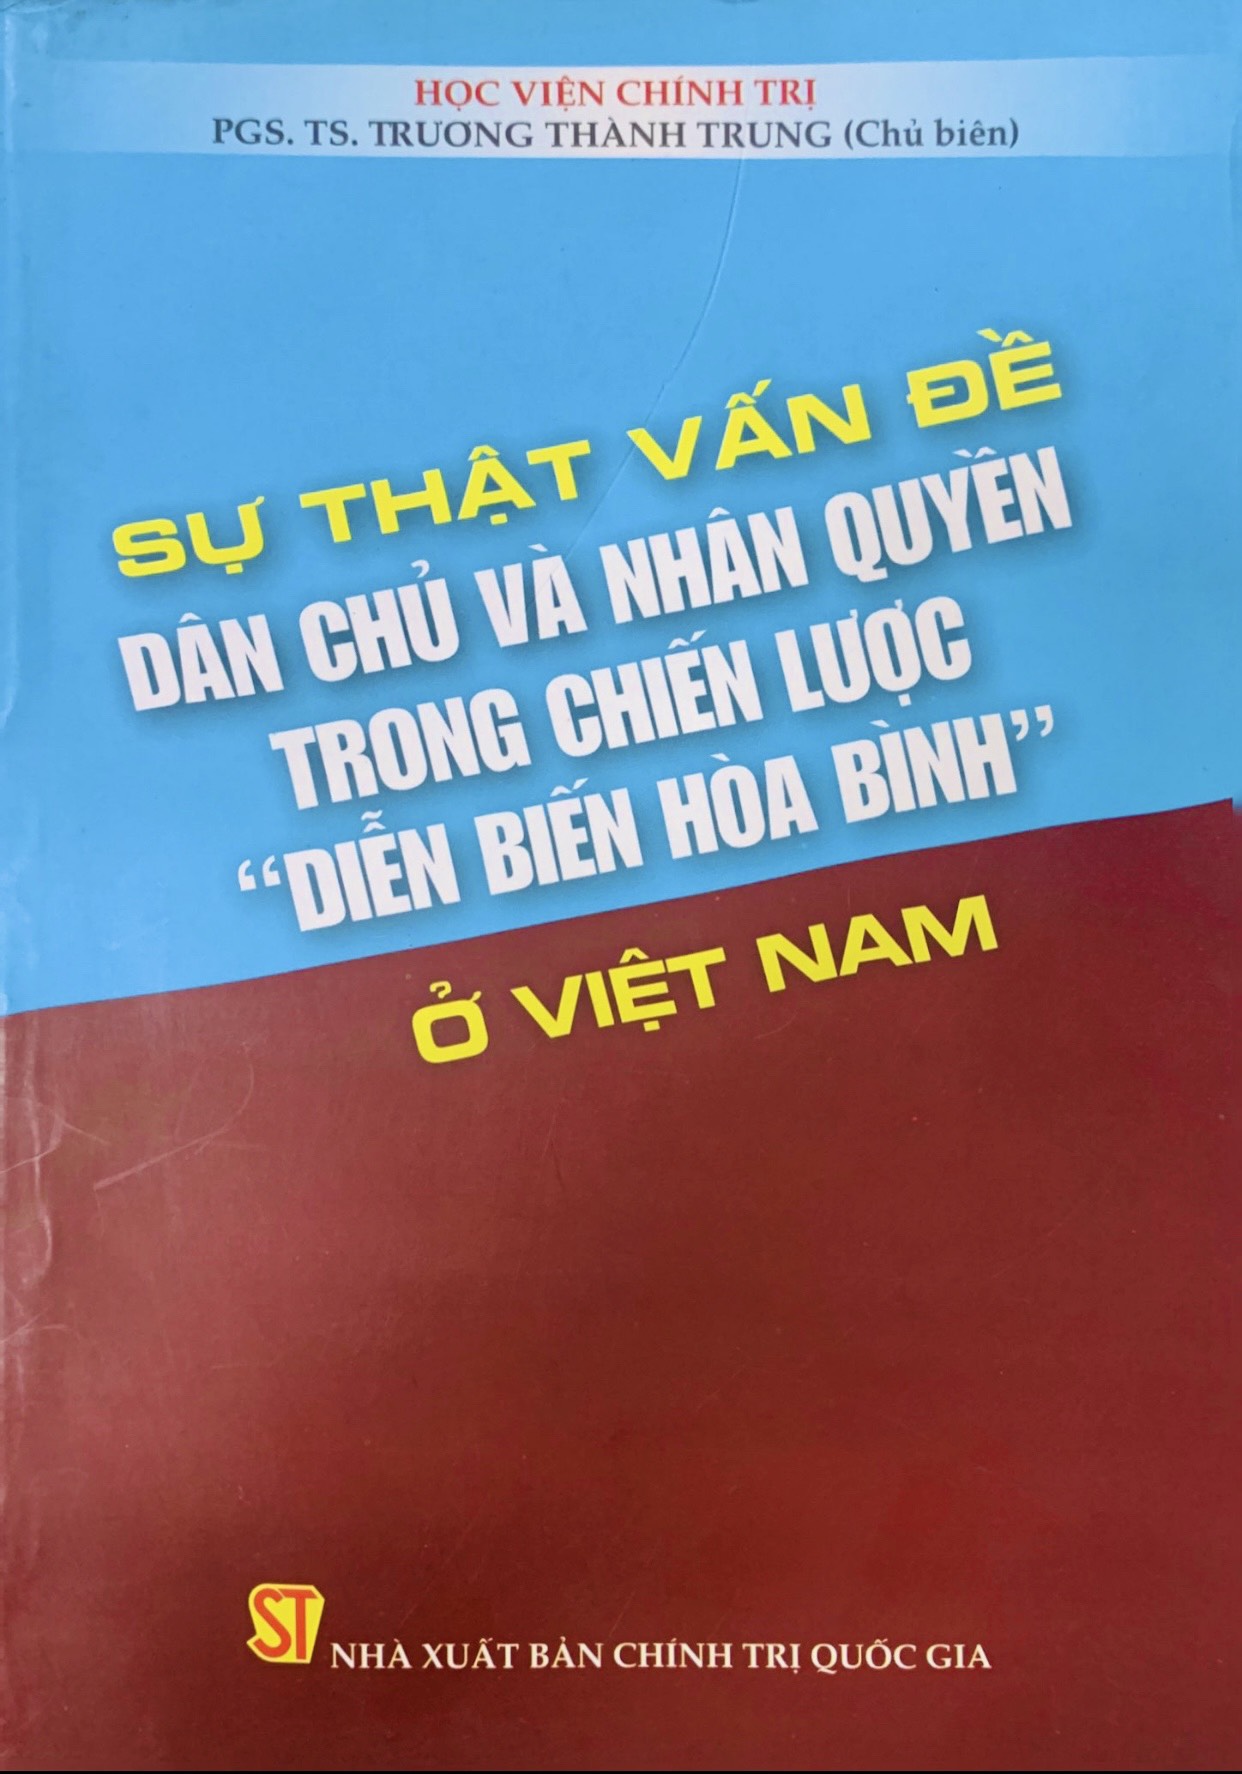 Sự thật về vấn đề dân chủ và dân quyền trong chiến lược &quot;Diễn biến hòa bình&quot; ở Việt Nam (xuất bản 2011)